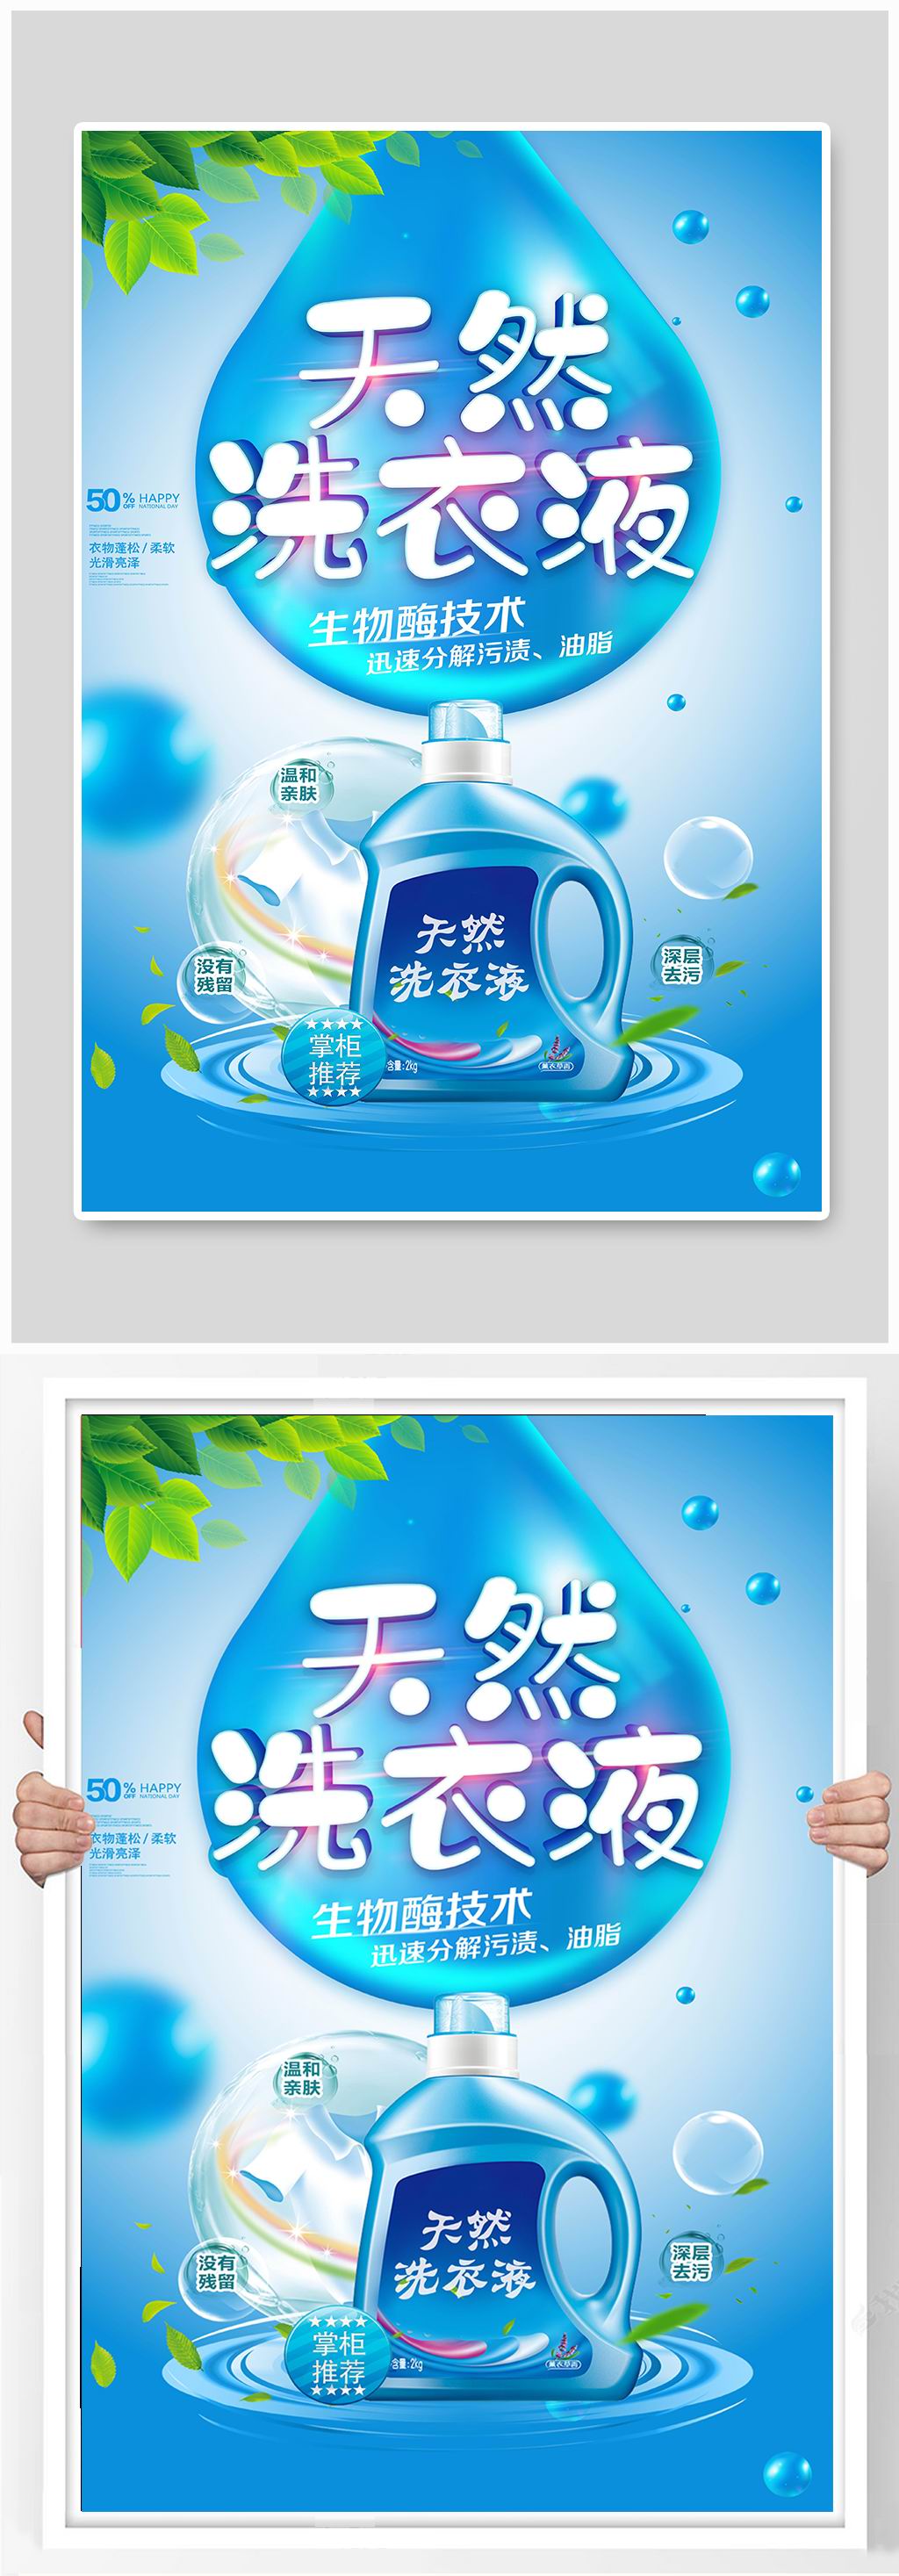 洗衣液宣传广告语图片